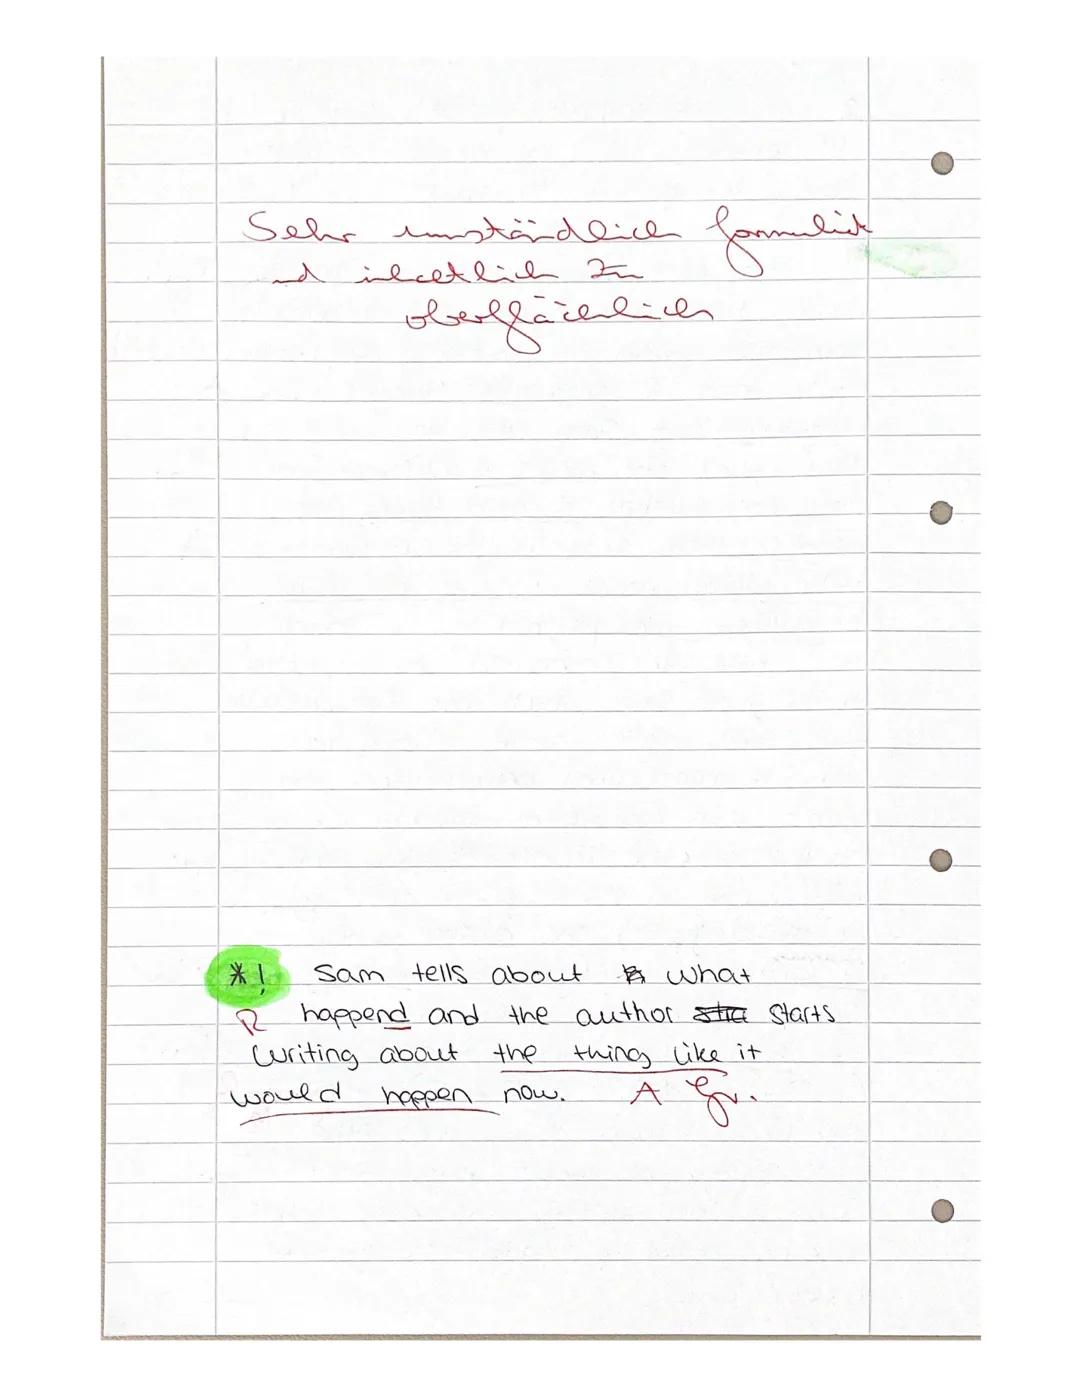 2020 EF 11.2 Englisch MÖLL
Analysing an excerpt from a novel (Nick Hornby: Slam)
Material: Nick Hornby, "Slam", Klett, Stuttgart 2009
chapte